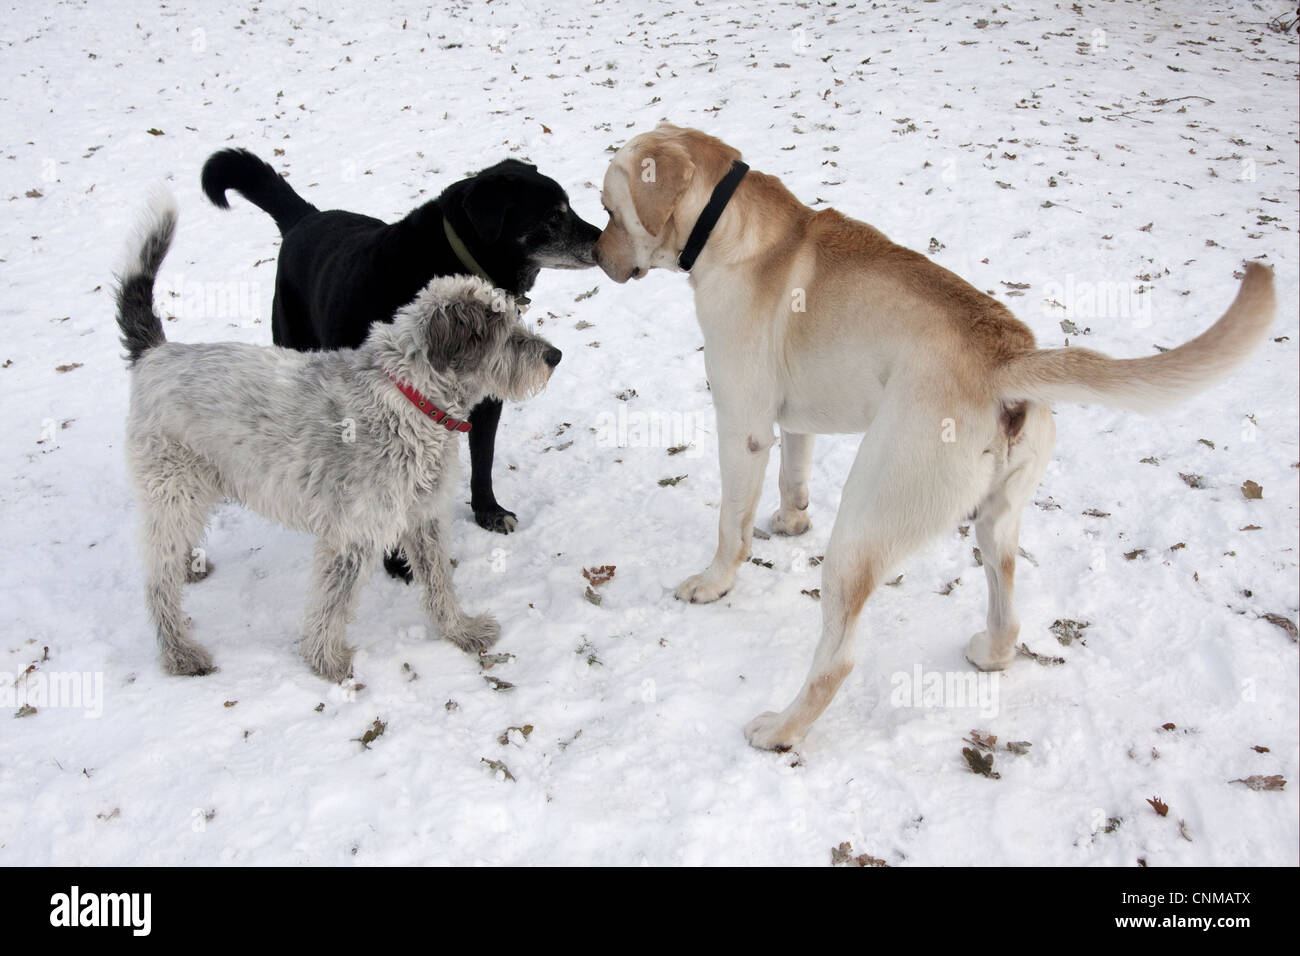 Cane domestico Montagna greca cane labrador cross mongrel anziani adulti incontro di socializzare giovani cane nella neve Inghilterra dicembre Foto Stock